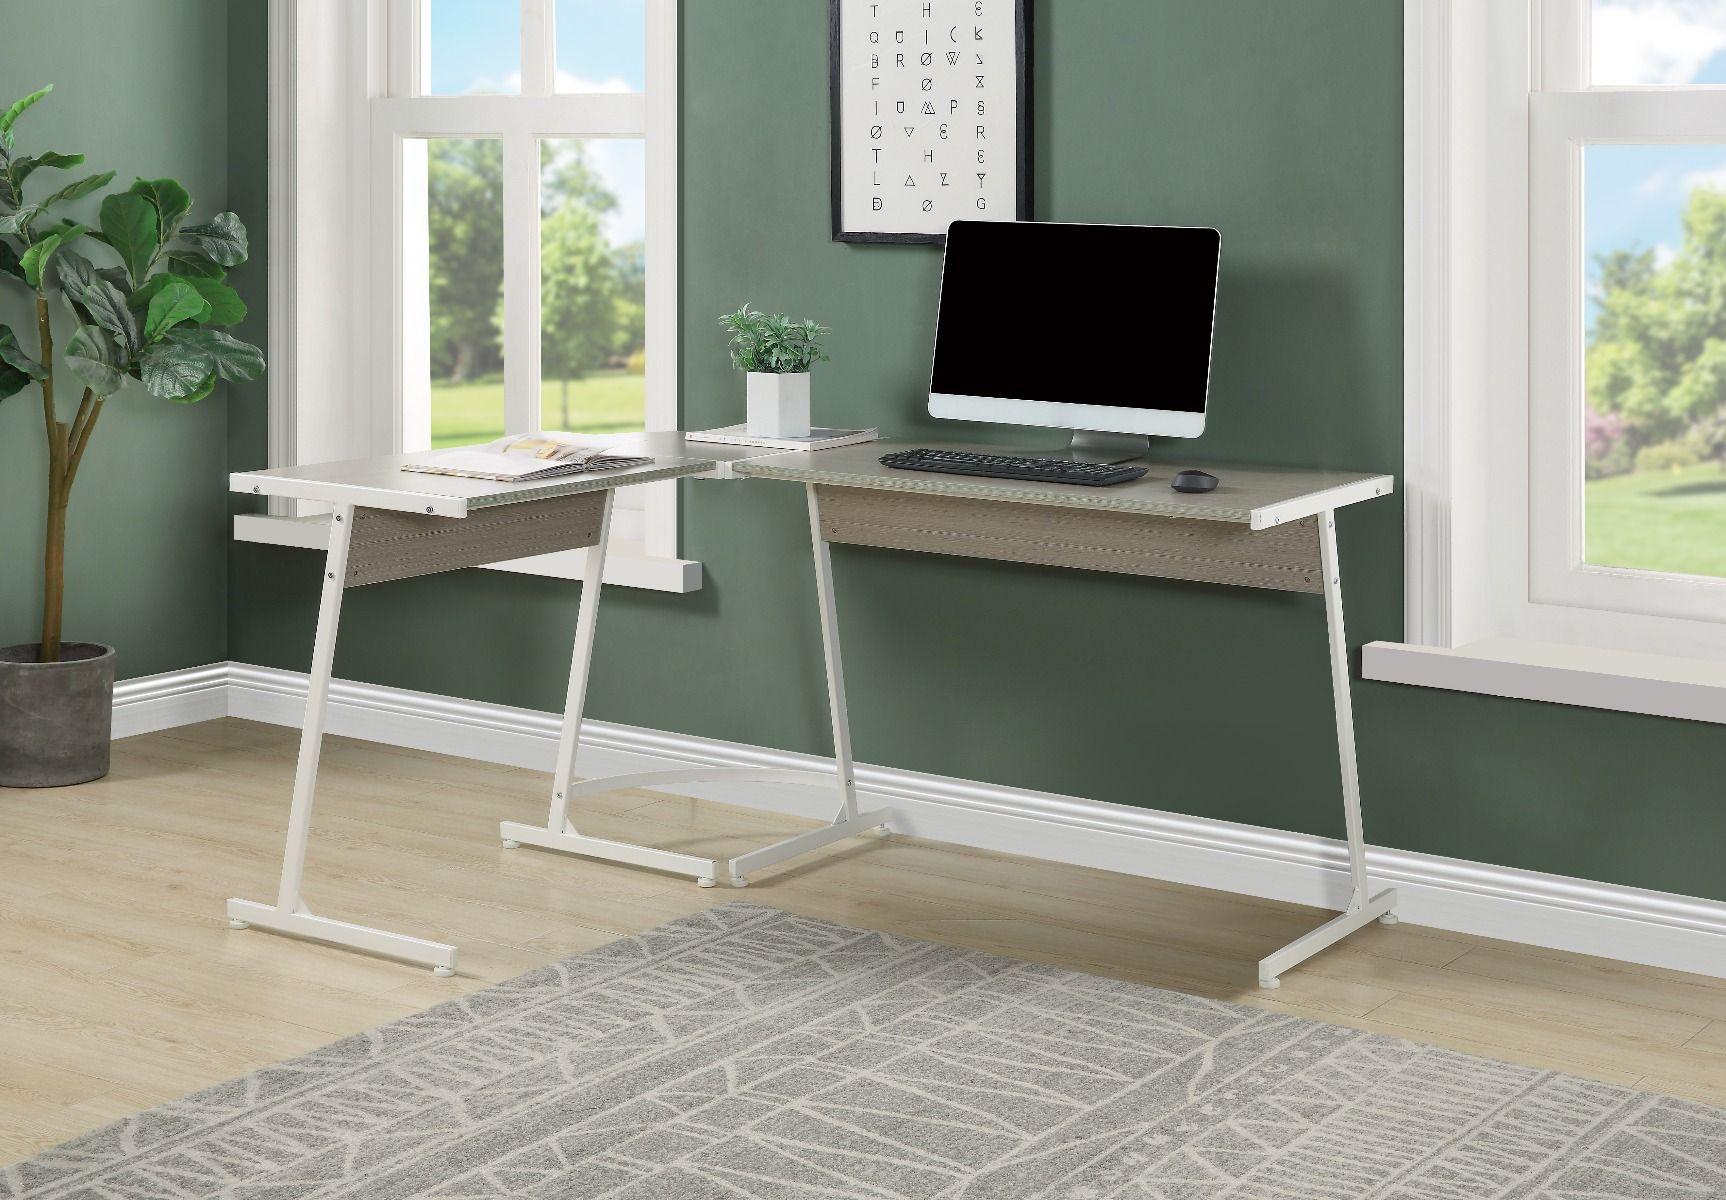 ACME - Dazenus - Desk - Gray & White Finish - 5th Avenue Furniture